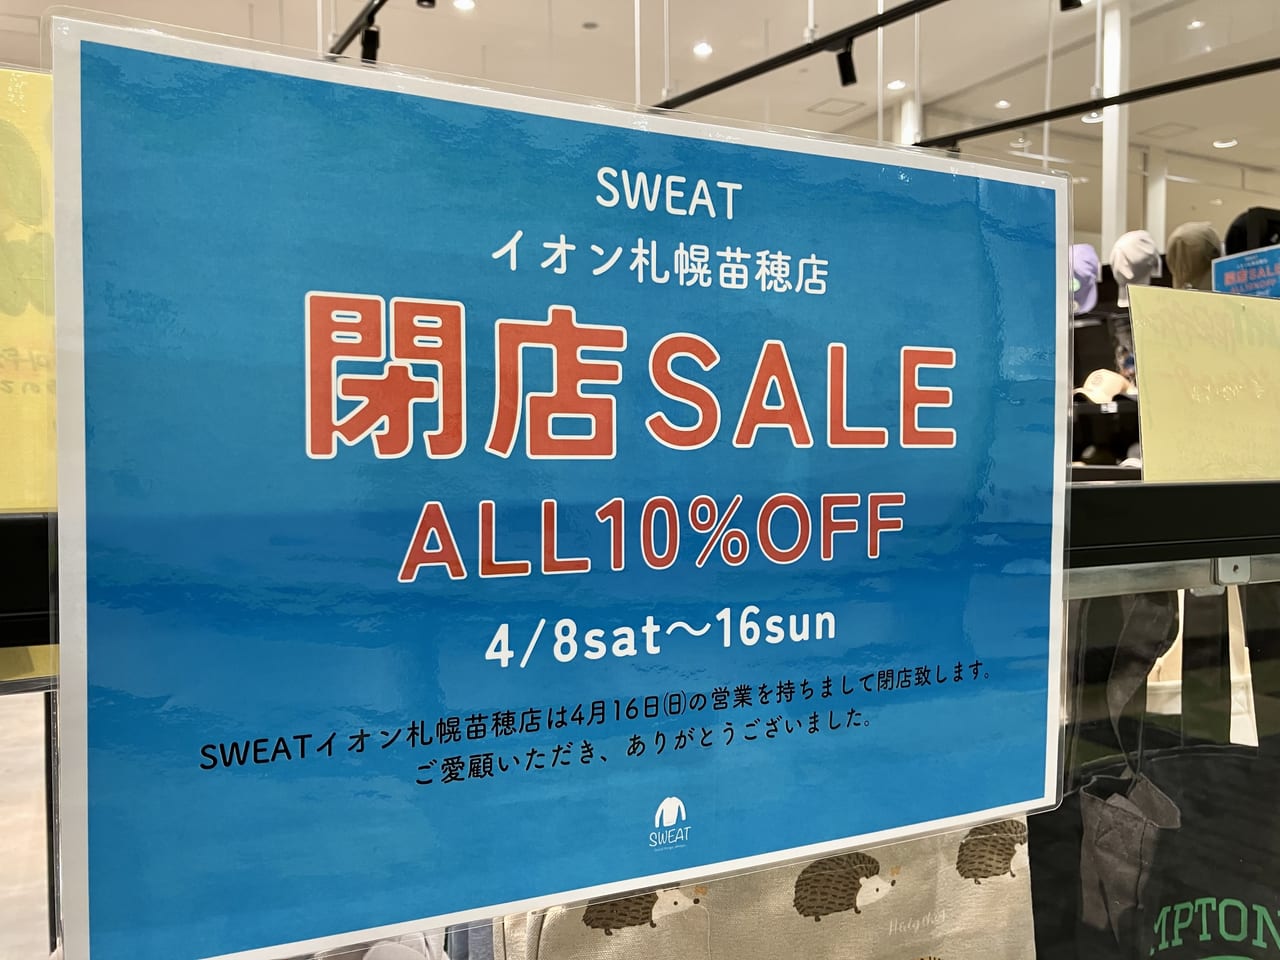 イオンモール札幌苗穂の「SWEAT」が閉店することがわかりました